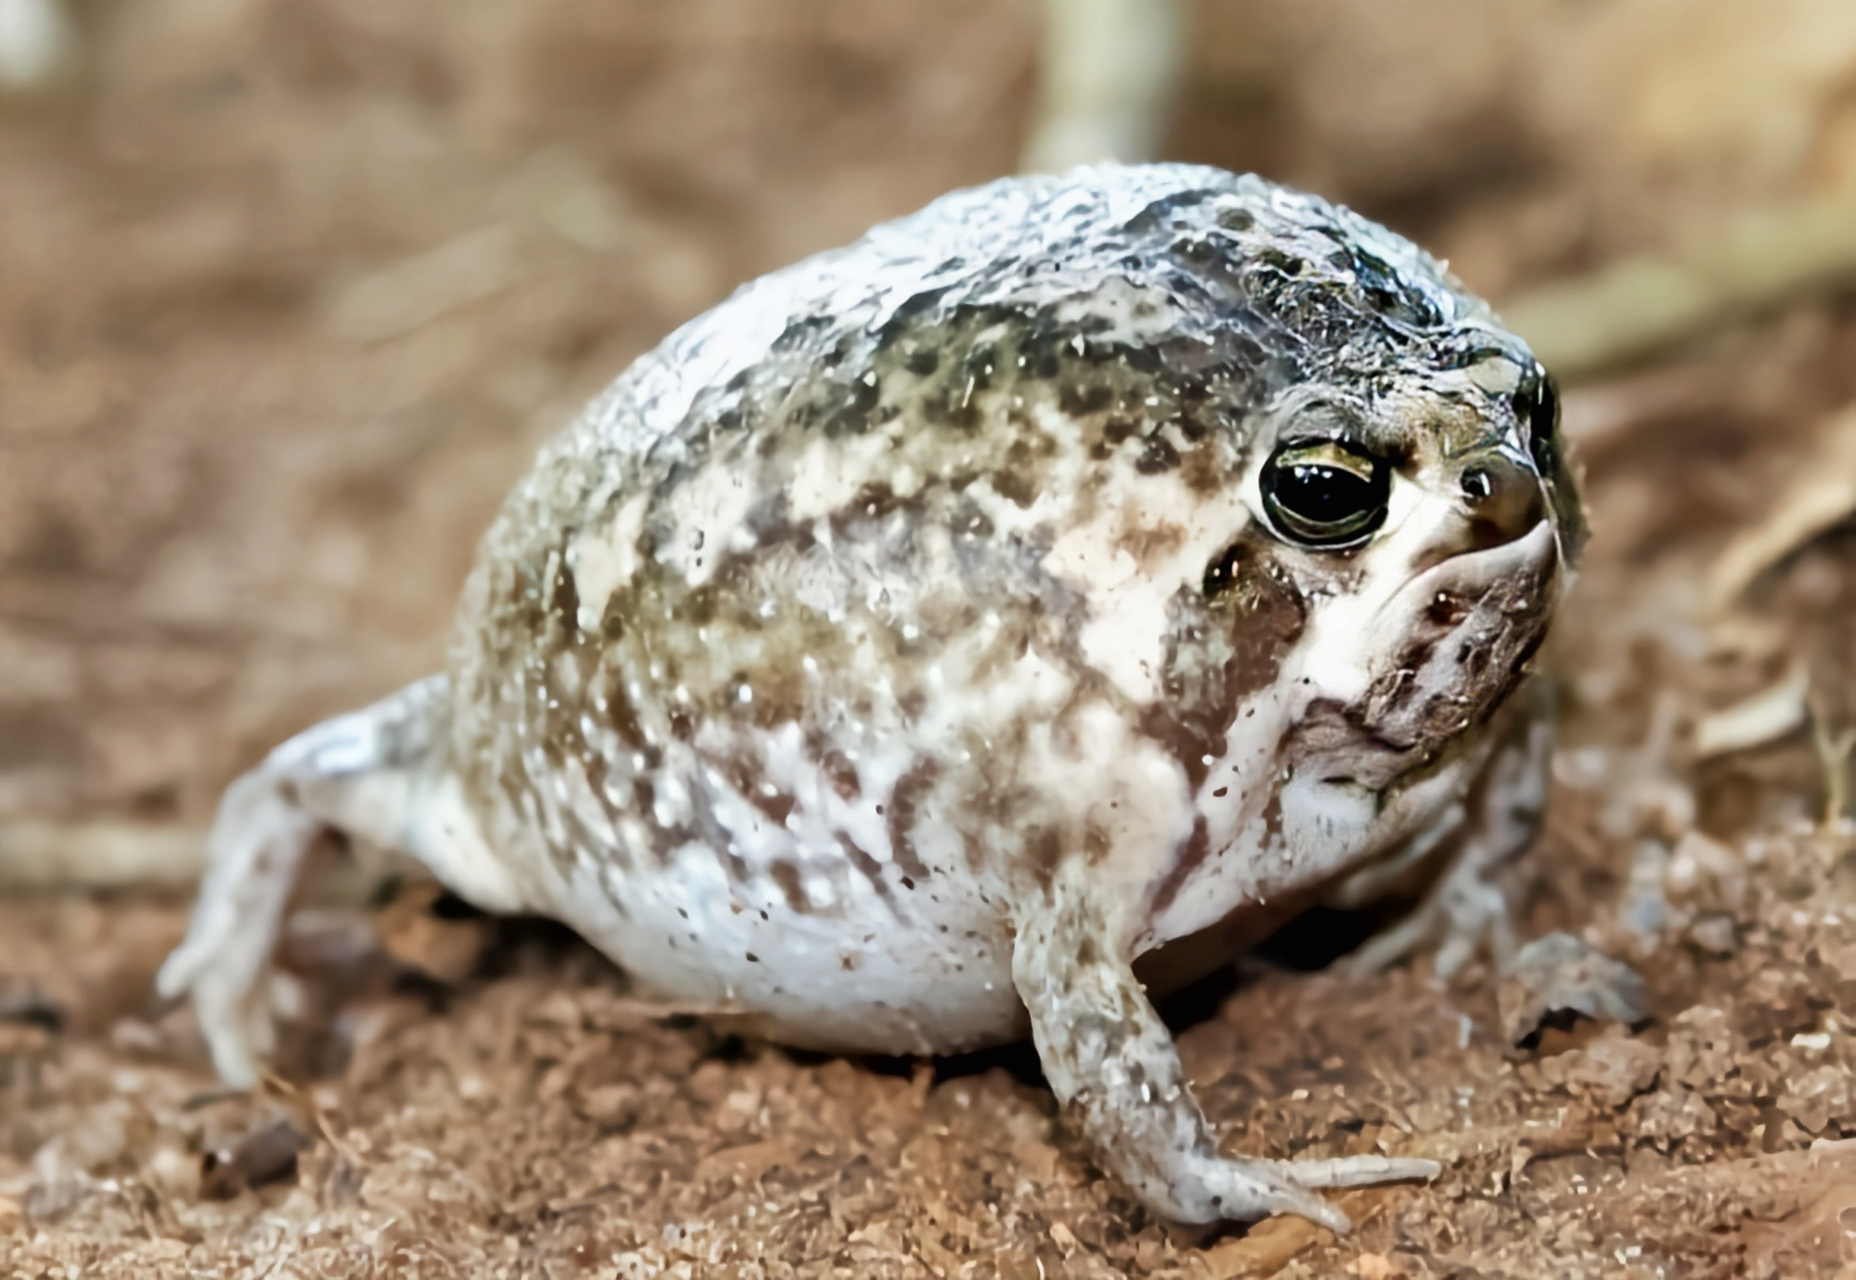 每天认识一种动物——南非沙漠雨蛙 南非沙漠雨蛙别名馒头蛙,生活在